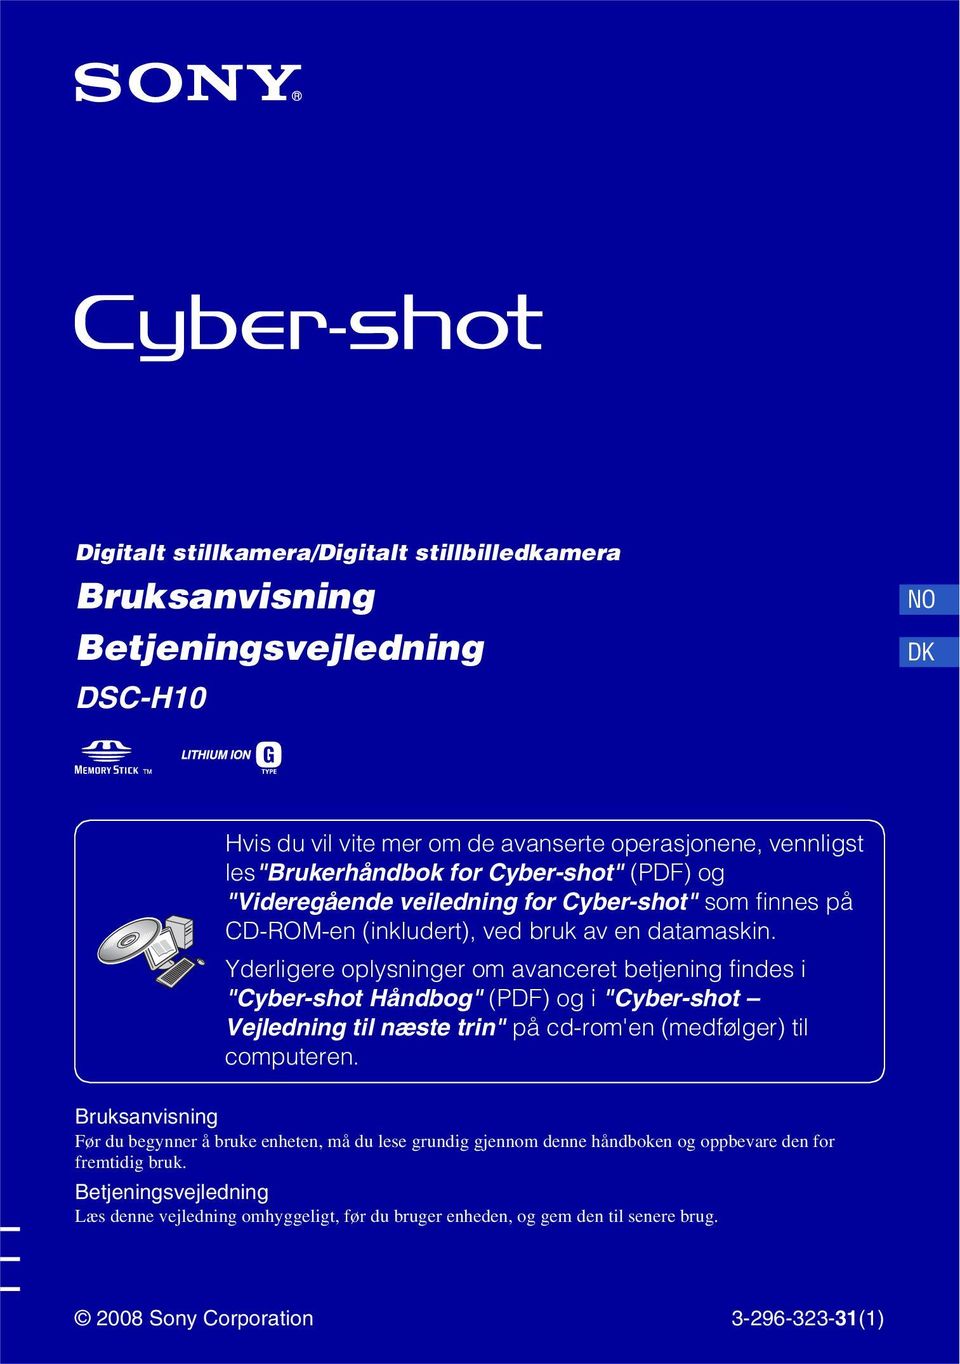 Yderligere oplysninger om avanceret betjening findes i "Cyber-shot Håndbog" (PDF) og i "Cyber-shot Vejledning til næste trin" på cd-rom'en (medfølger) til computeren.